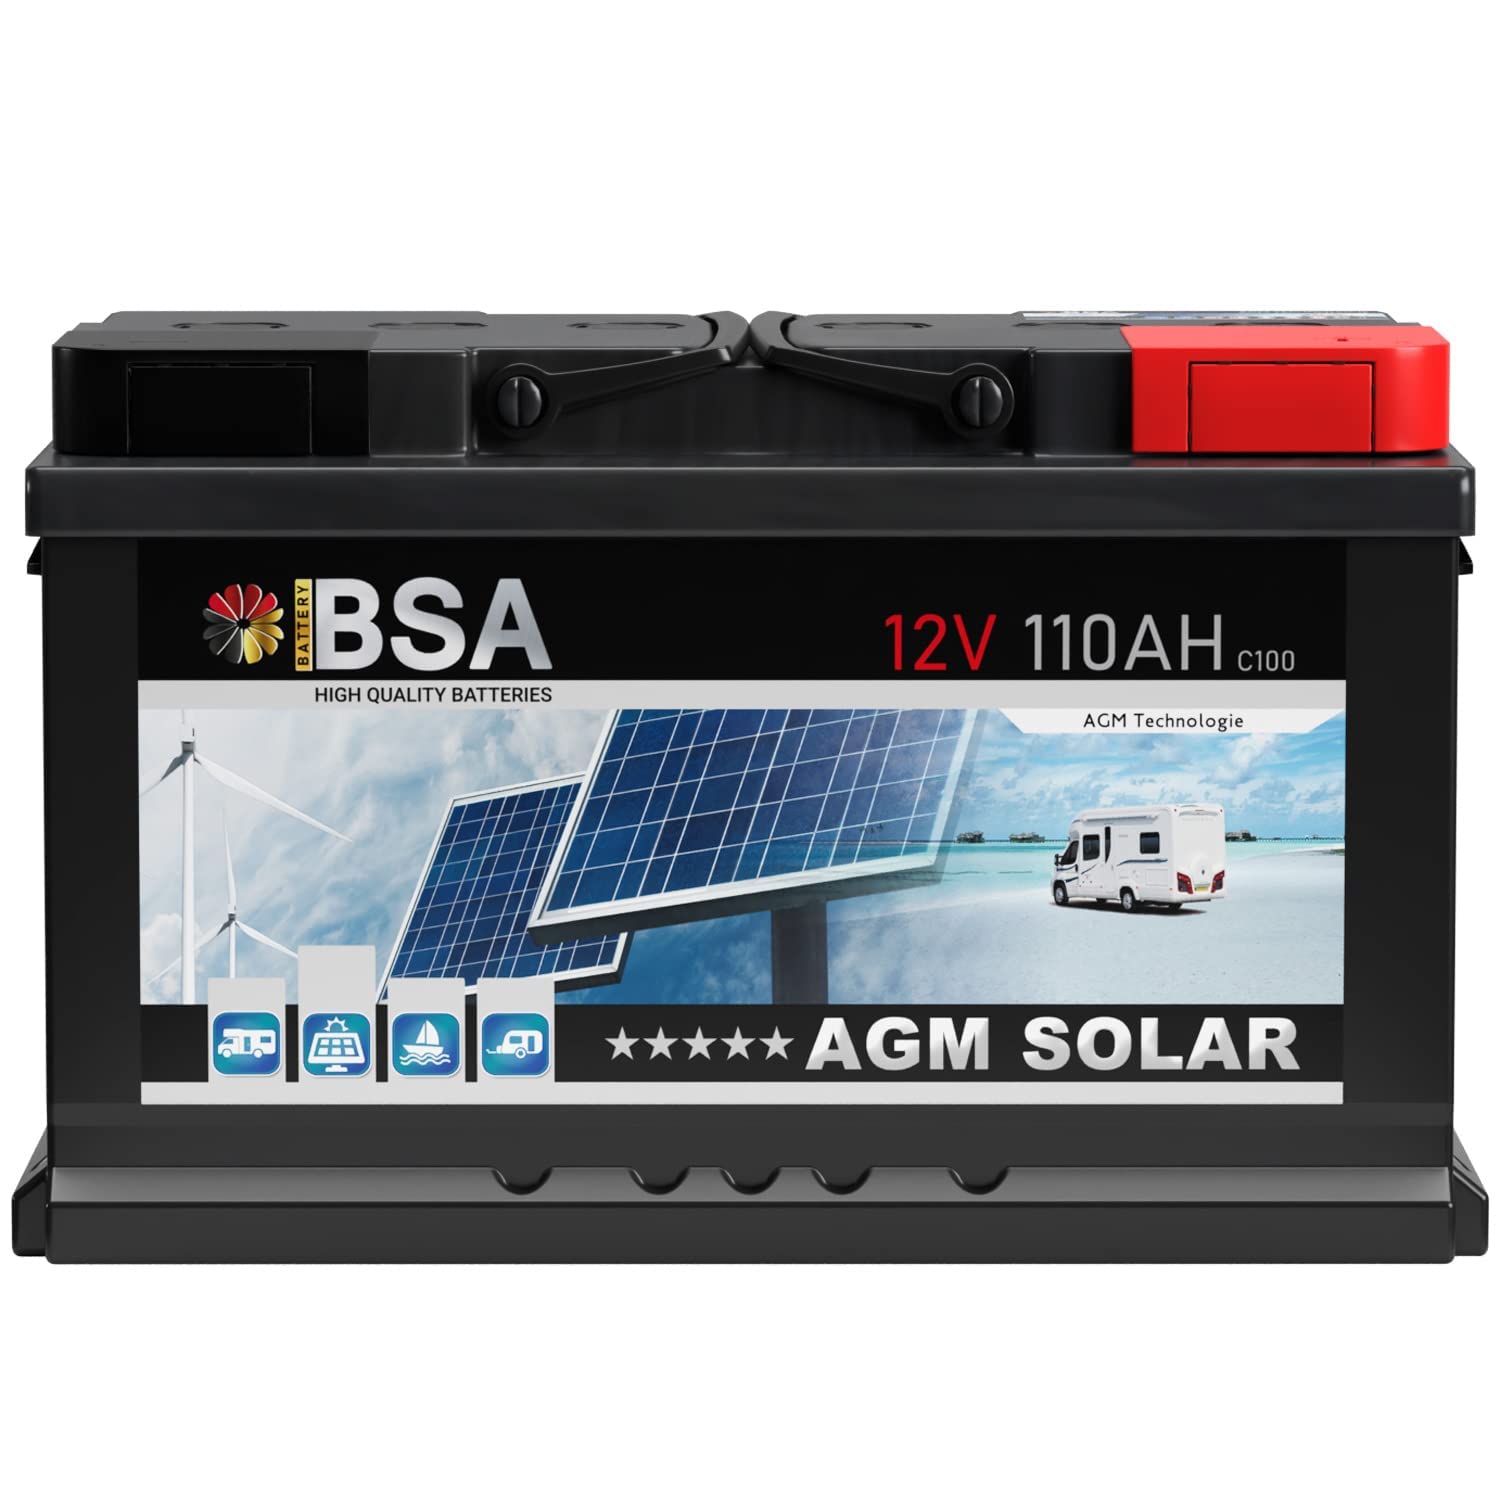 BSA AGM Batterie 110Ah 12V Solarbatterie ersetzt 100Ah Deep Cycle Wohnmobil Bootsbatterie zyklenfeste wartungsfreie VRLA Batterie von BSA BATTERY HIGH QUALITY BATTERIES